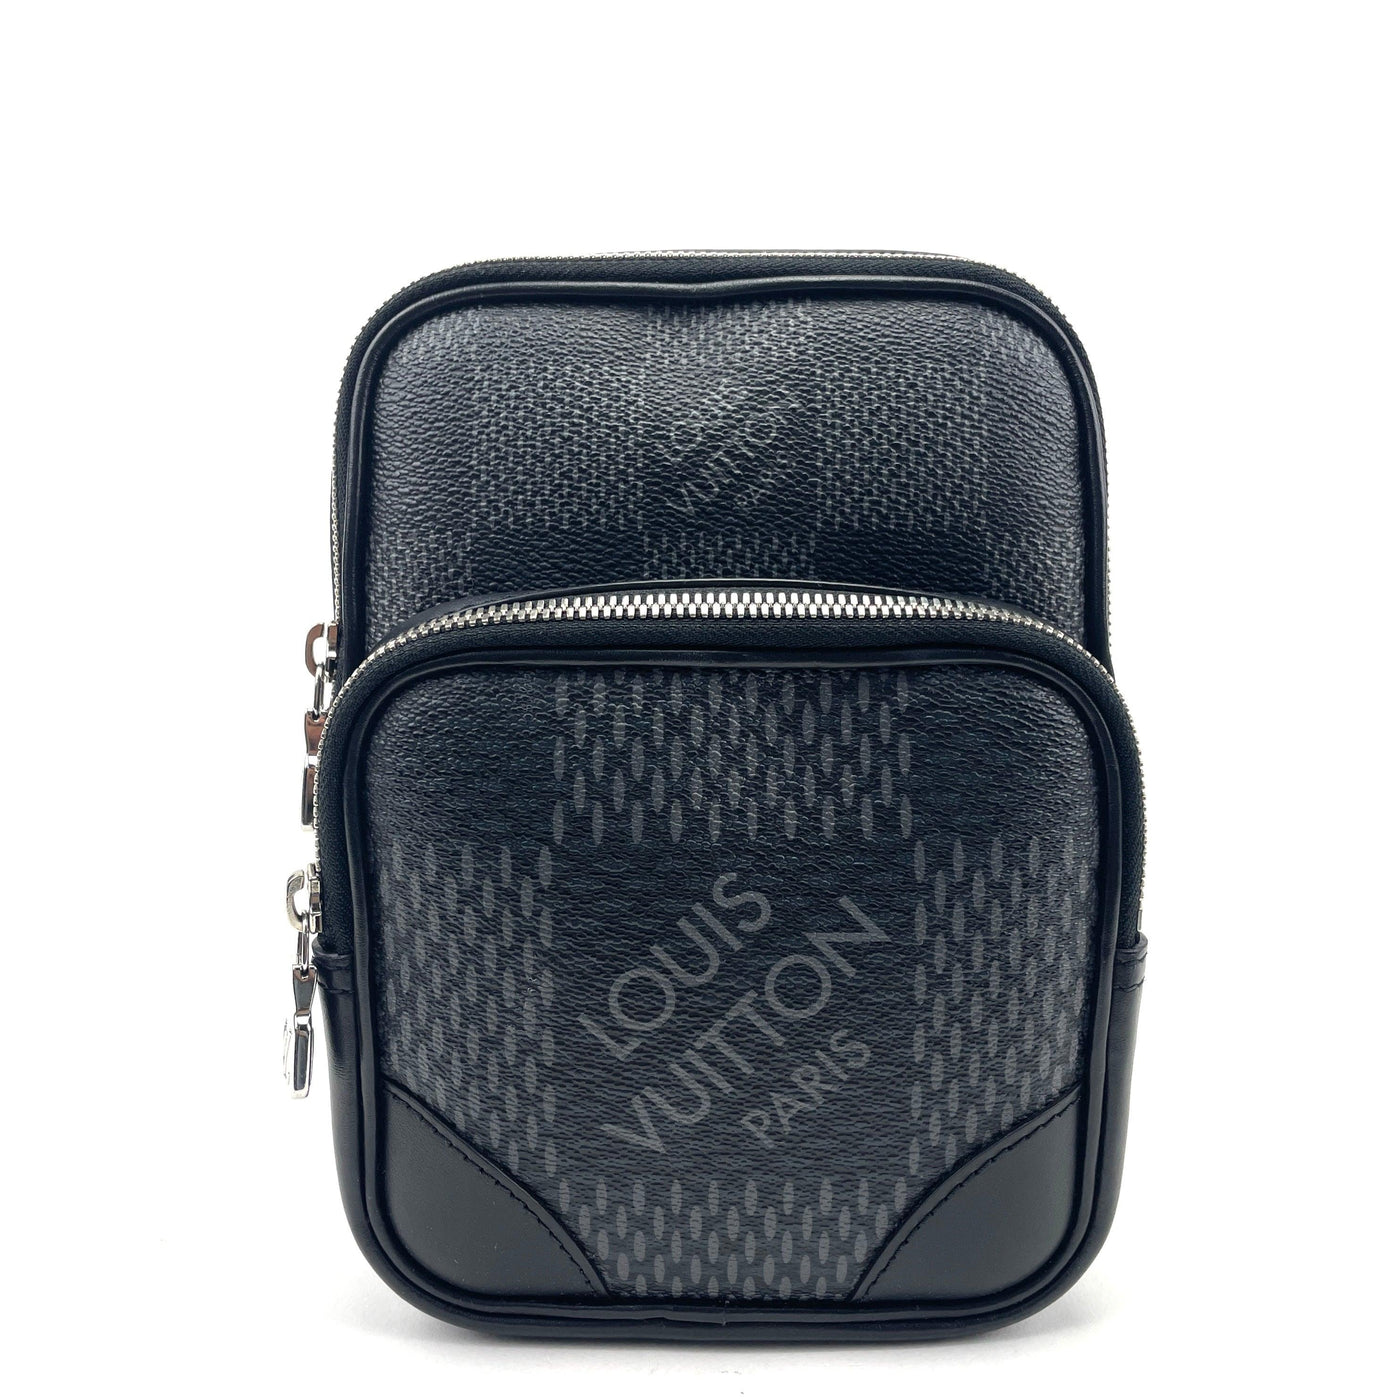 Louis Vuitton luggage bag 3D model